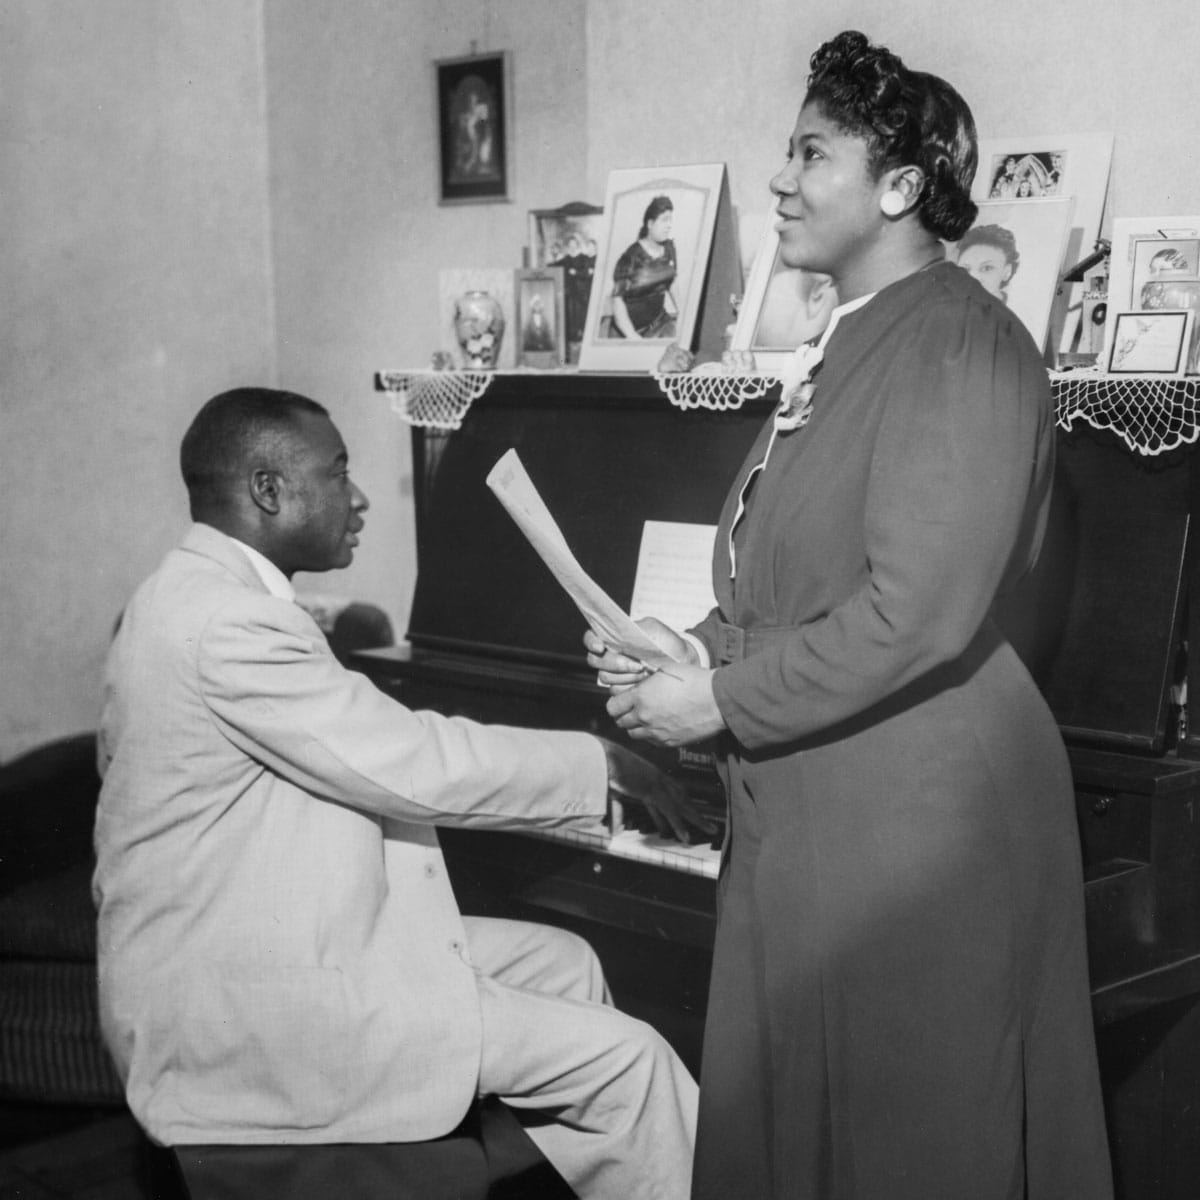 Thomas Dorsey at piano with Mahalia Jackson standing nearby